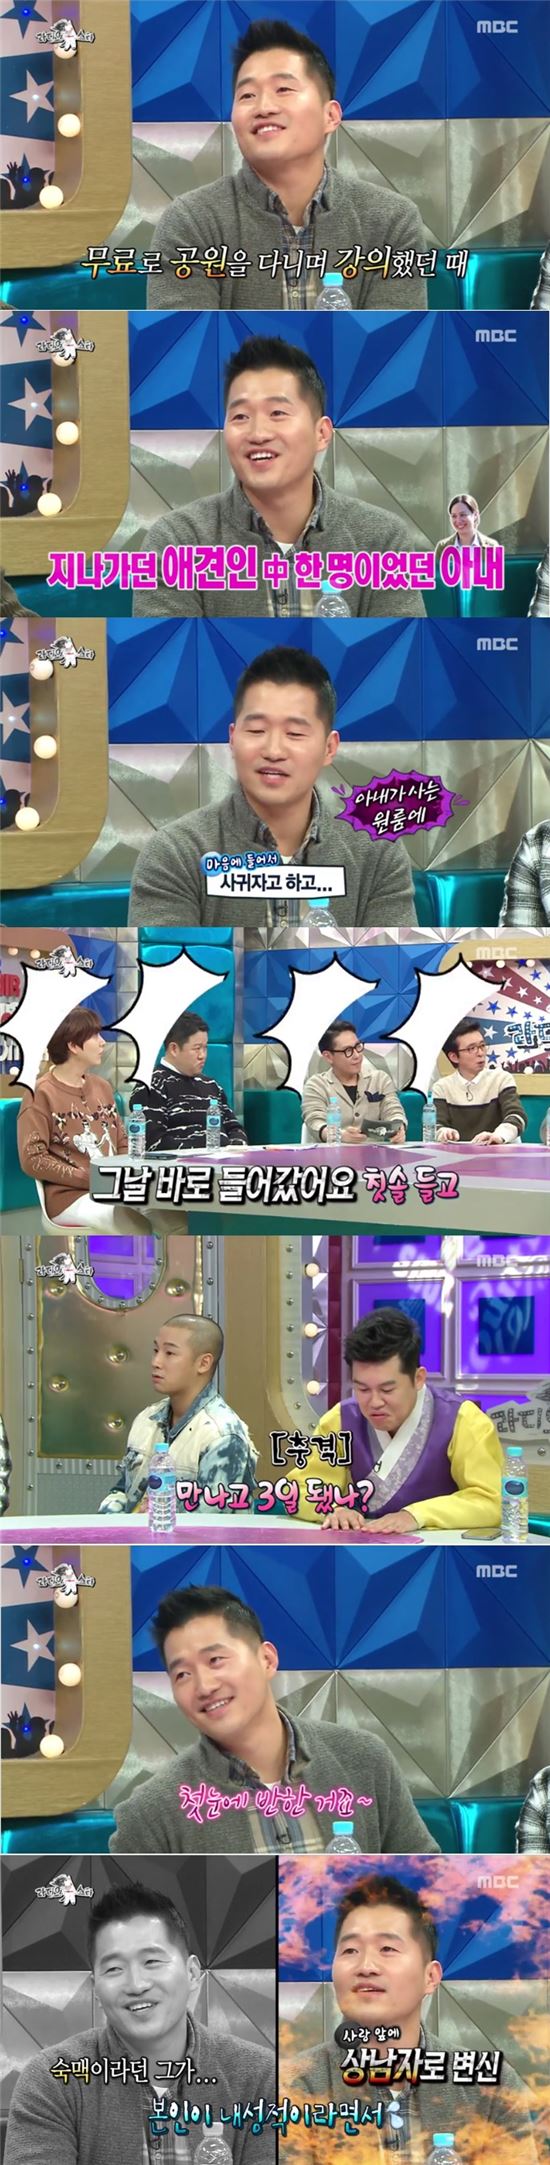 MBC '황금어장 라디오스타'에서 강형욱이 아내와의 러브스토리를 밝히고 있다./사진=MBC '황금어장 라디오스타' 방송화면 캡처